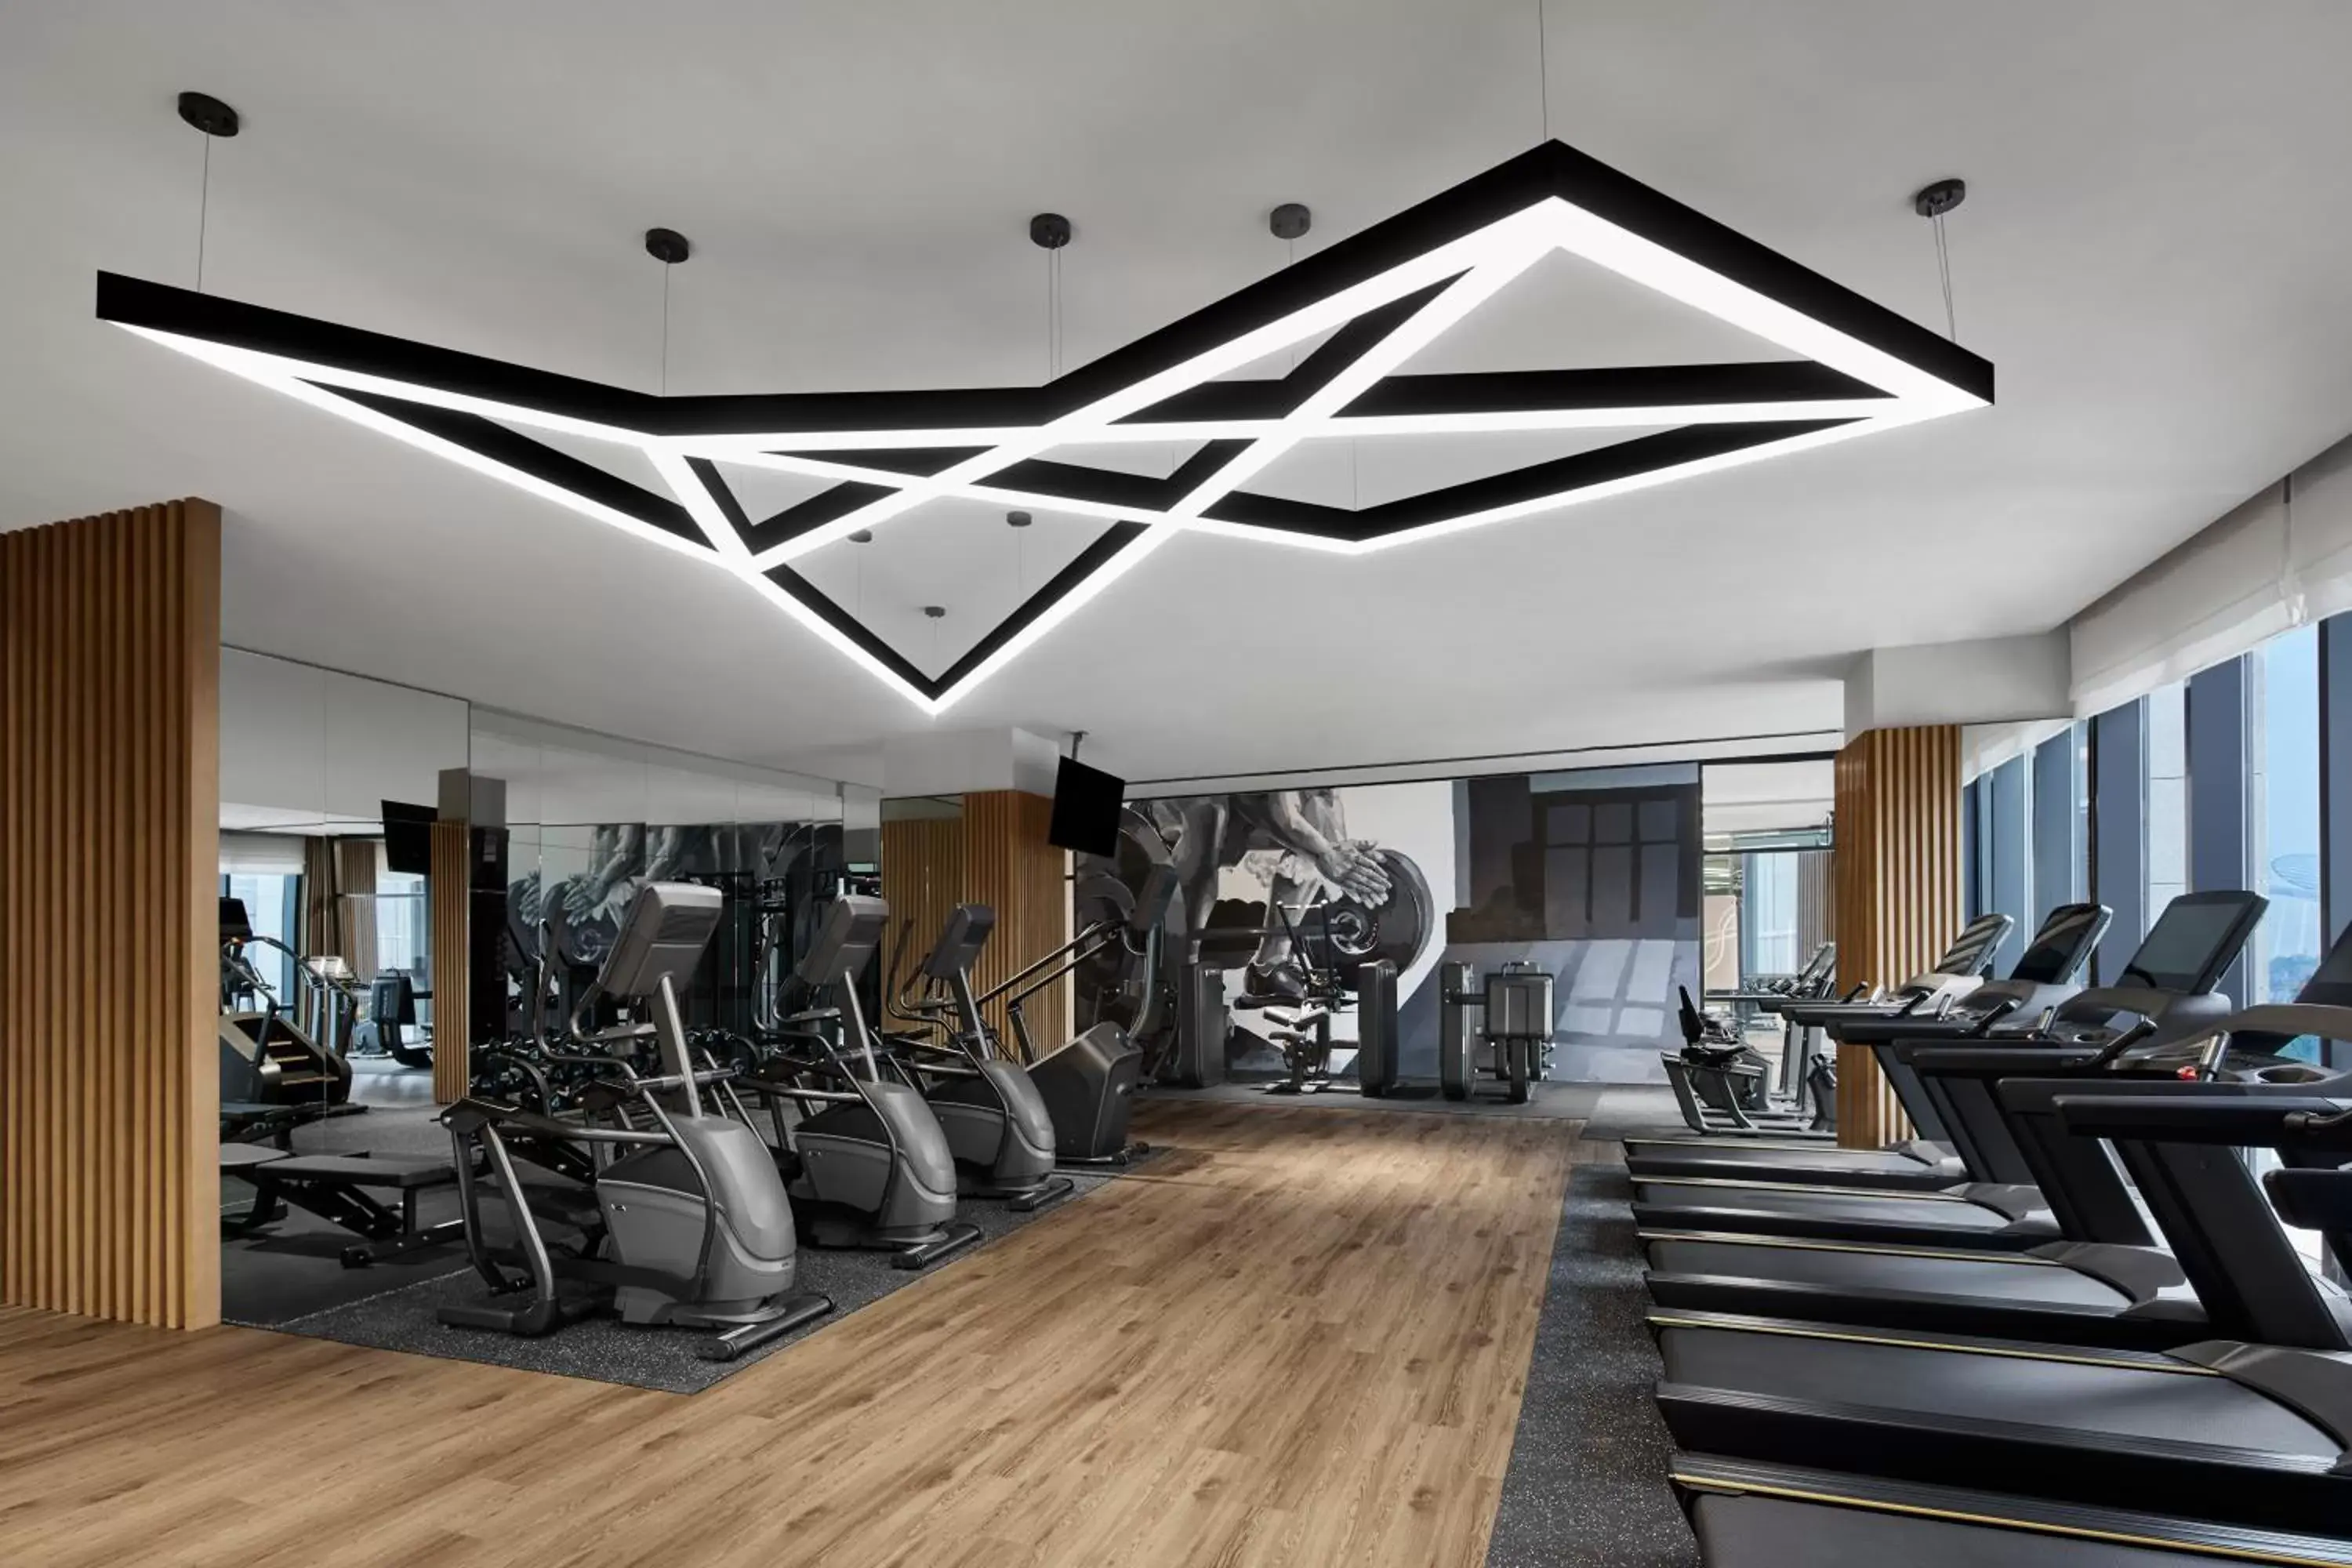 Fitness centre/facilities, Fitness Center/Facilities in Nantong Marriott Hotel